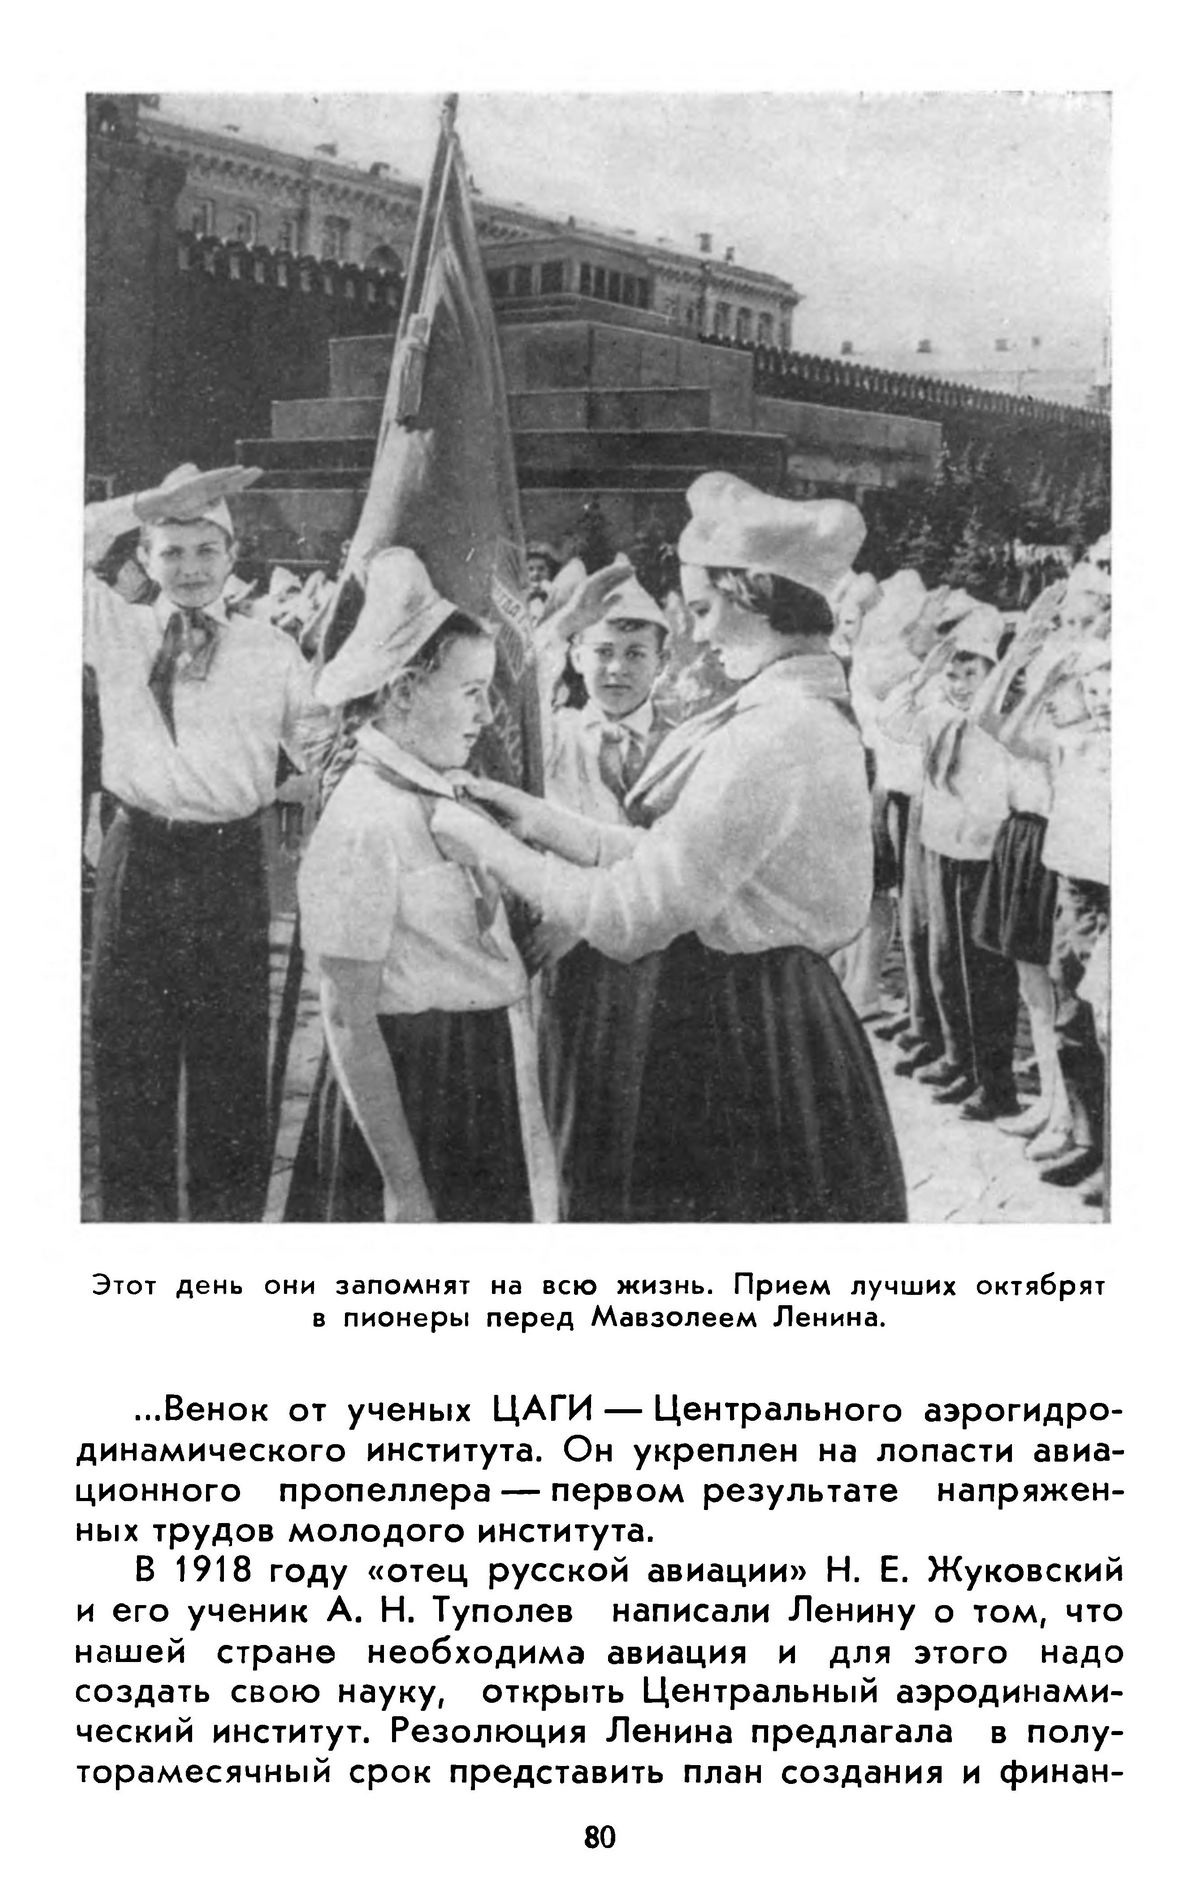 Мавзолей Ленина / А. С. Абрамов. — Москва : Московский рабочий, 1963